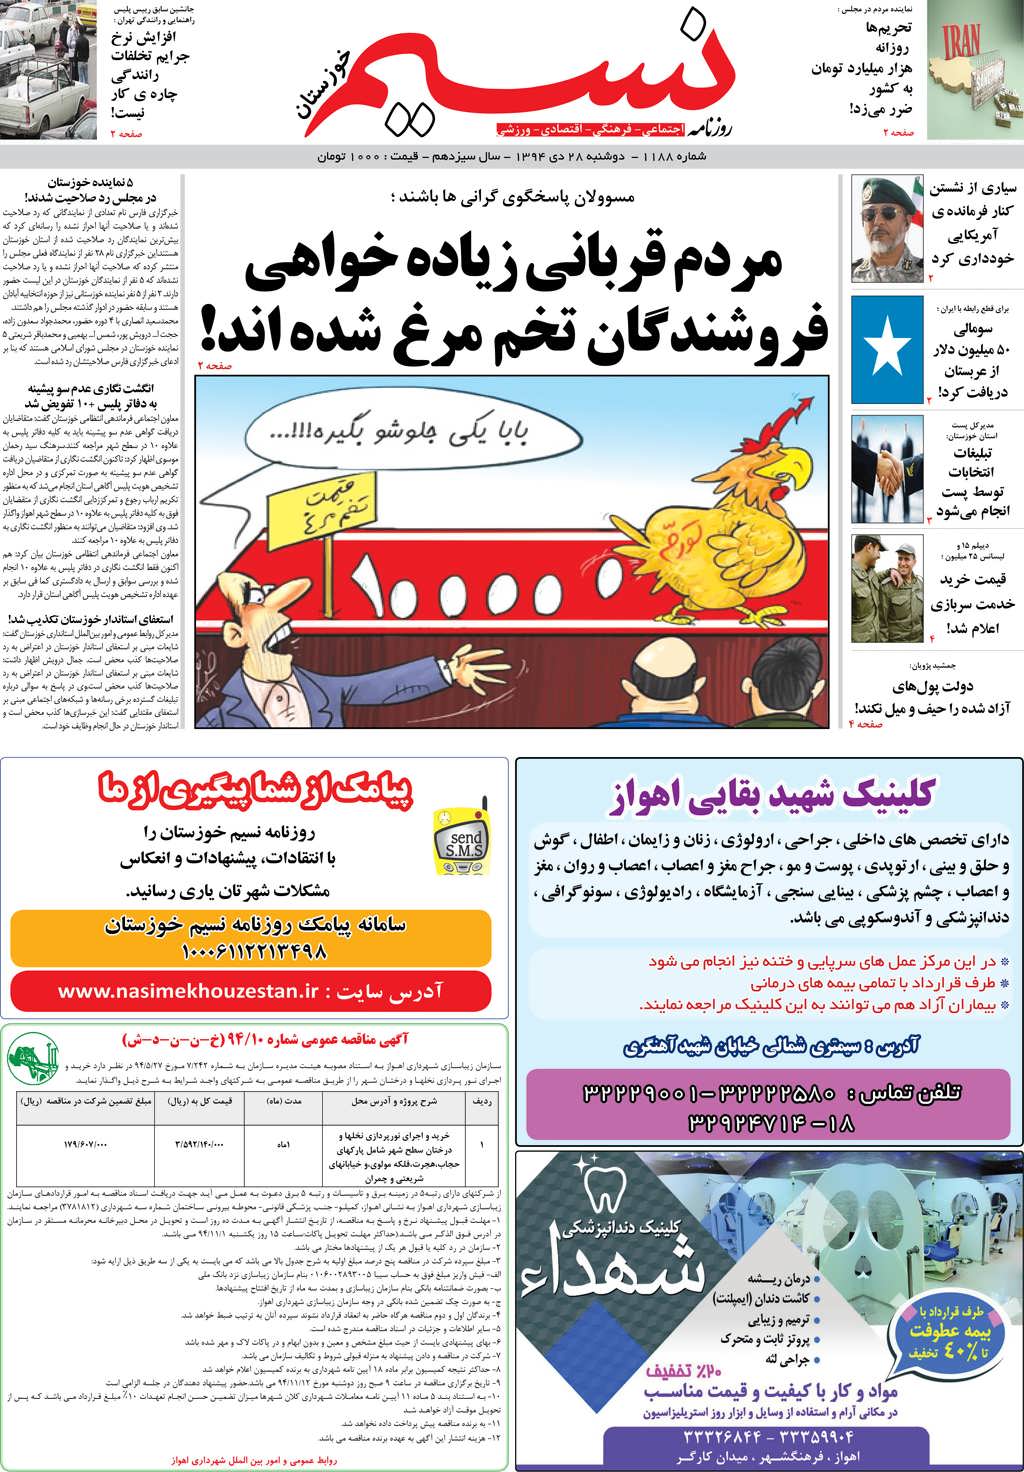 صفحه اصلی روزنامه نسیم شماره 1188